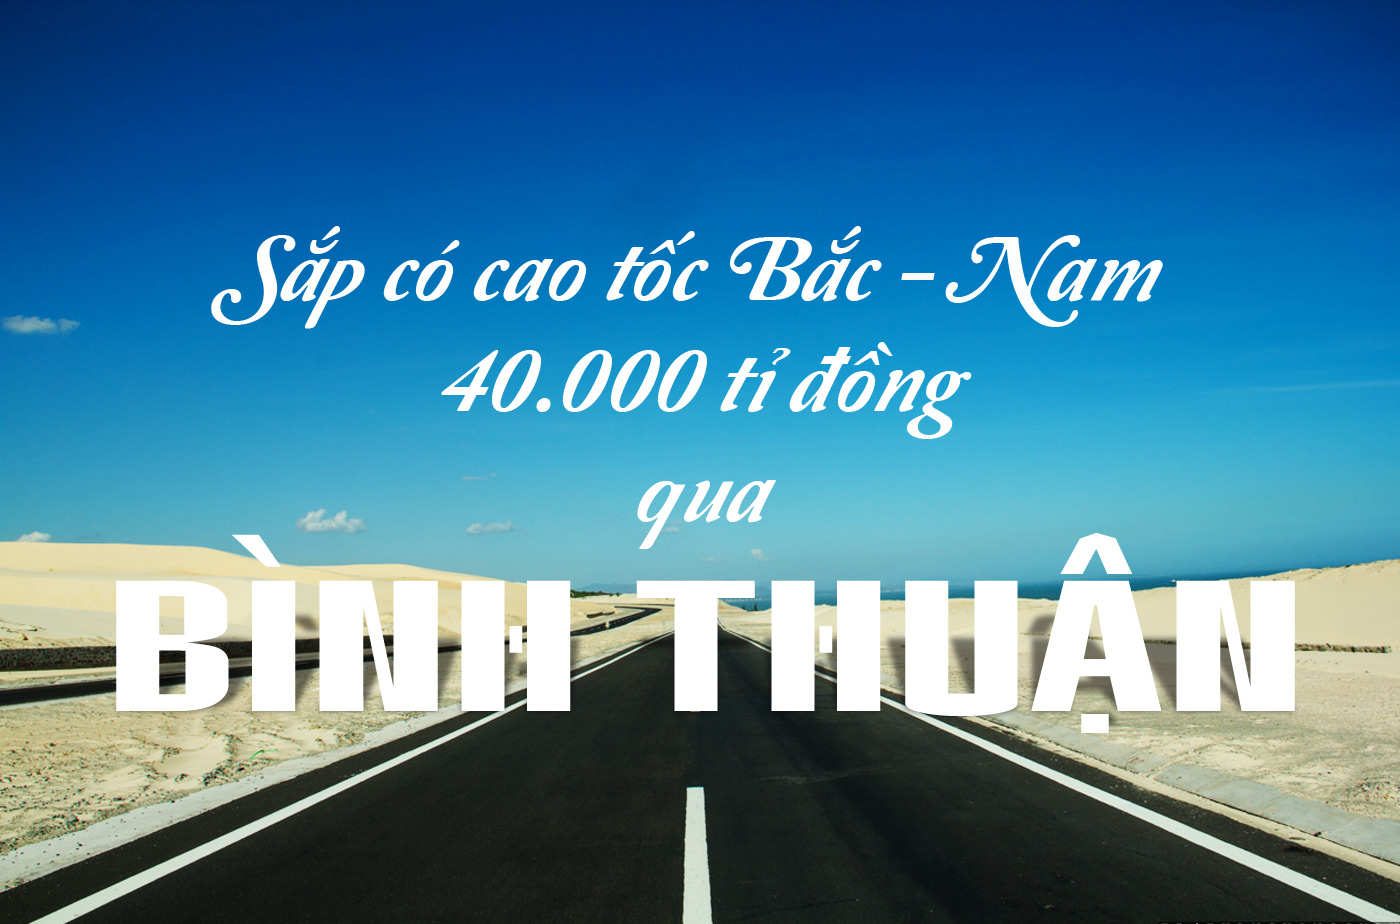 Sắp có cao tốc Bắc - Nam 40.000 tỉ đồng qua Bình Thuận - Ảnh 1